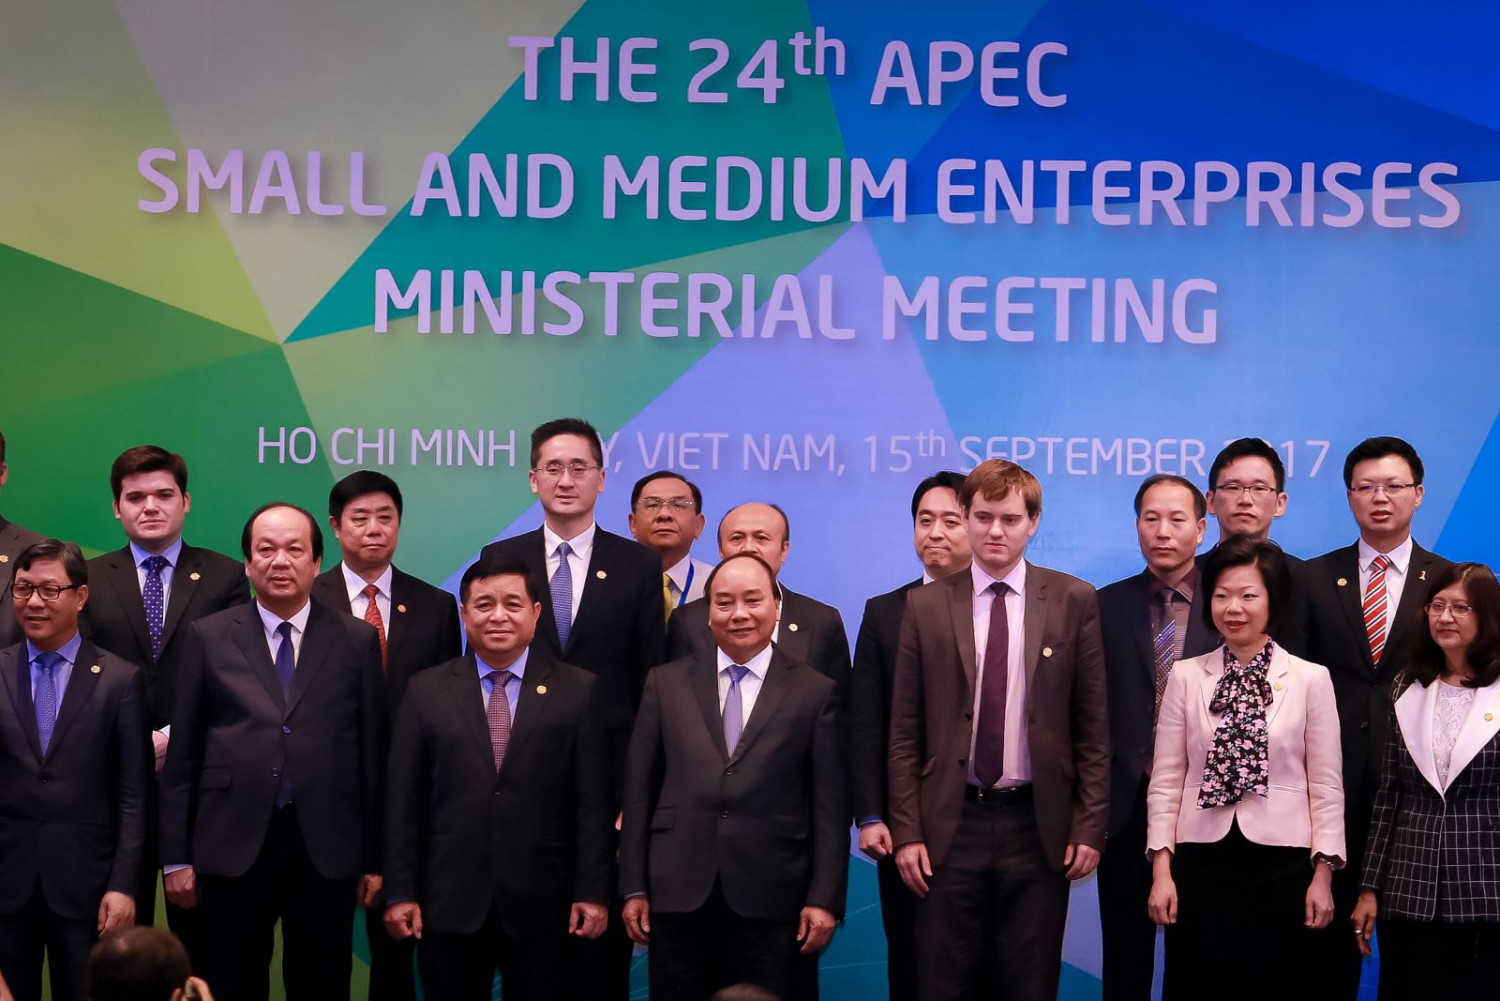 Thủ tướng Nguyễn Xuân Phúc cùng các bộ trưởng kinh tế thành viên APEC và chuyên gia kinh tế 